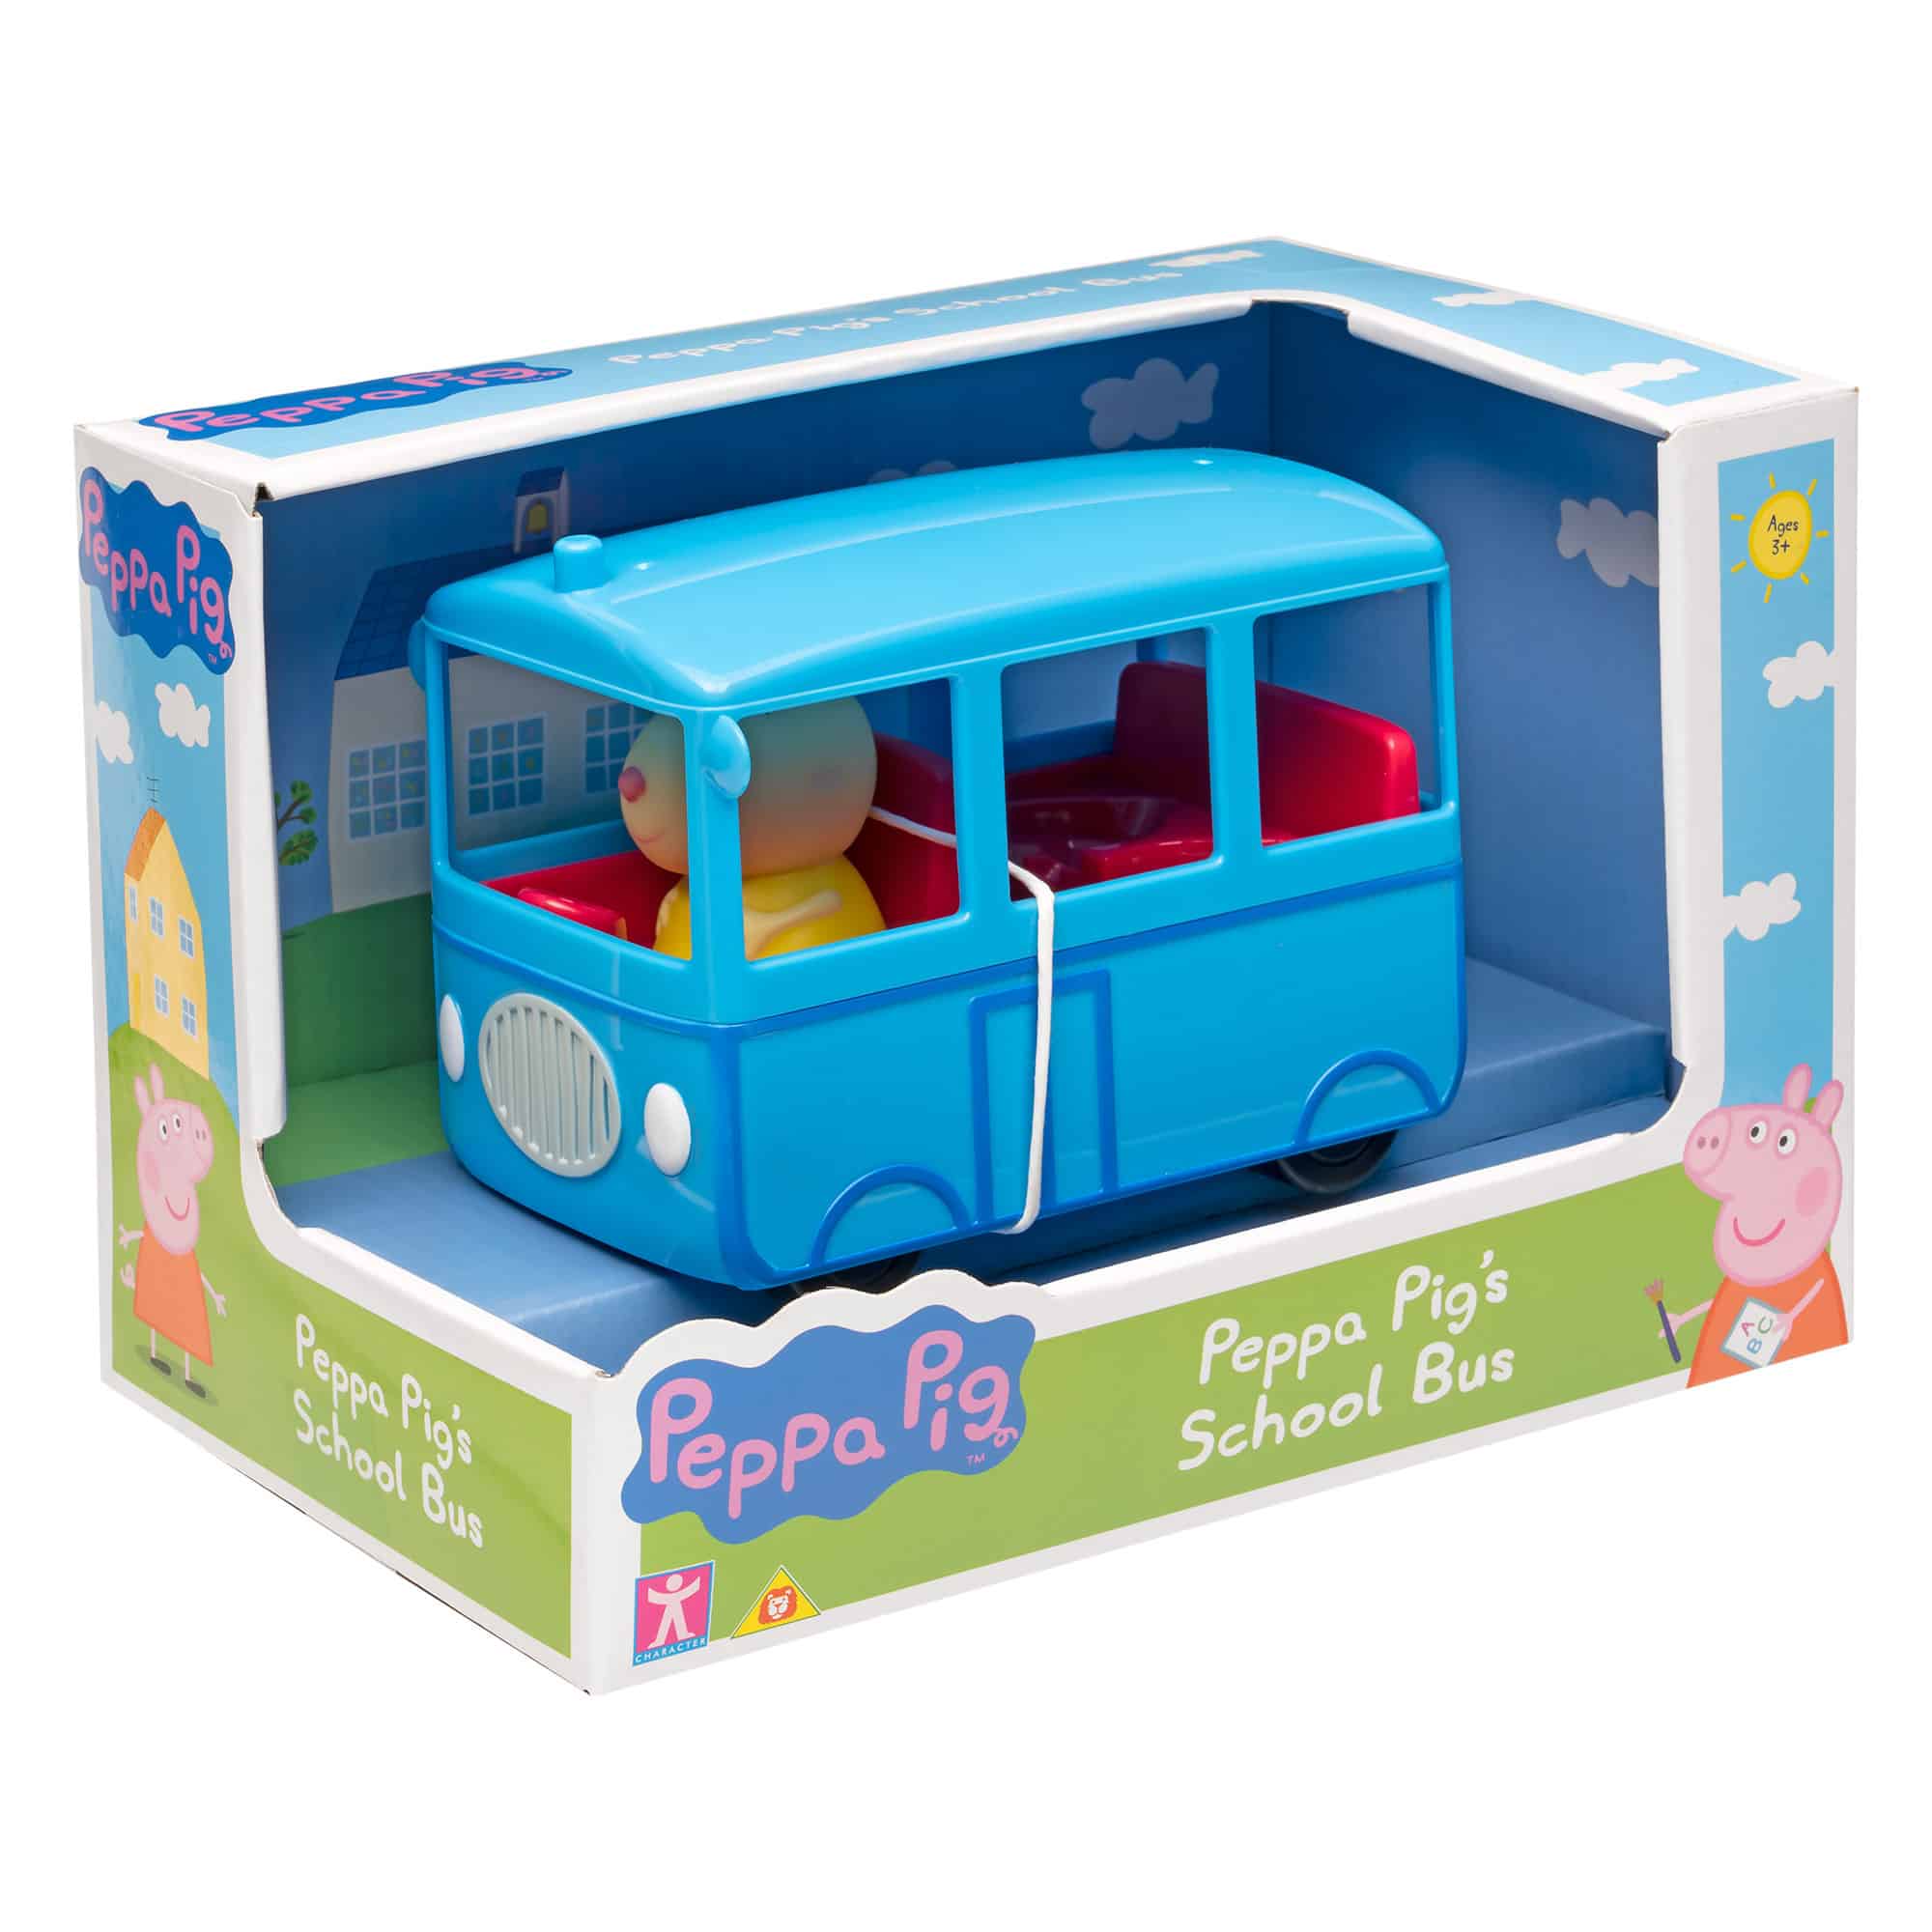 Peppa Pig - Peppa Pig's School Bus